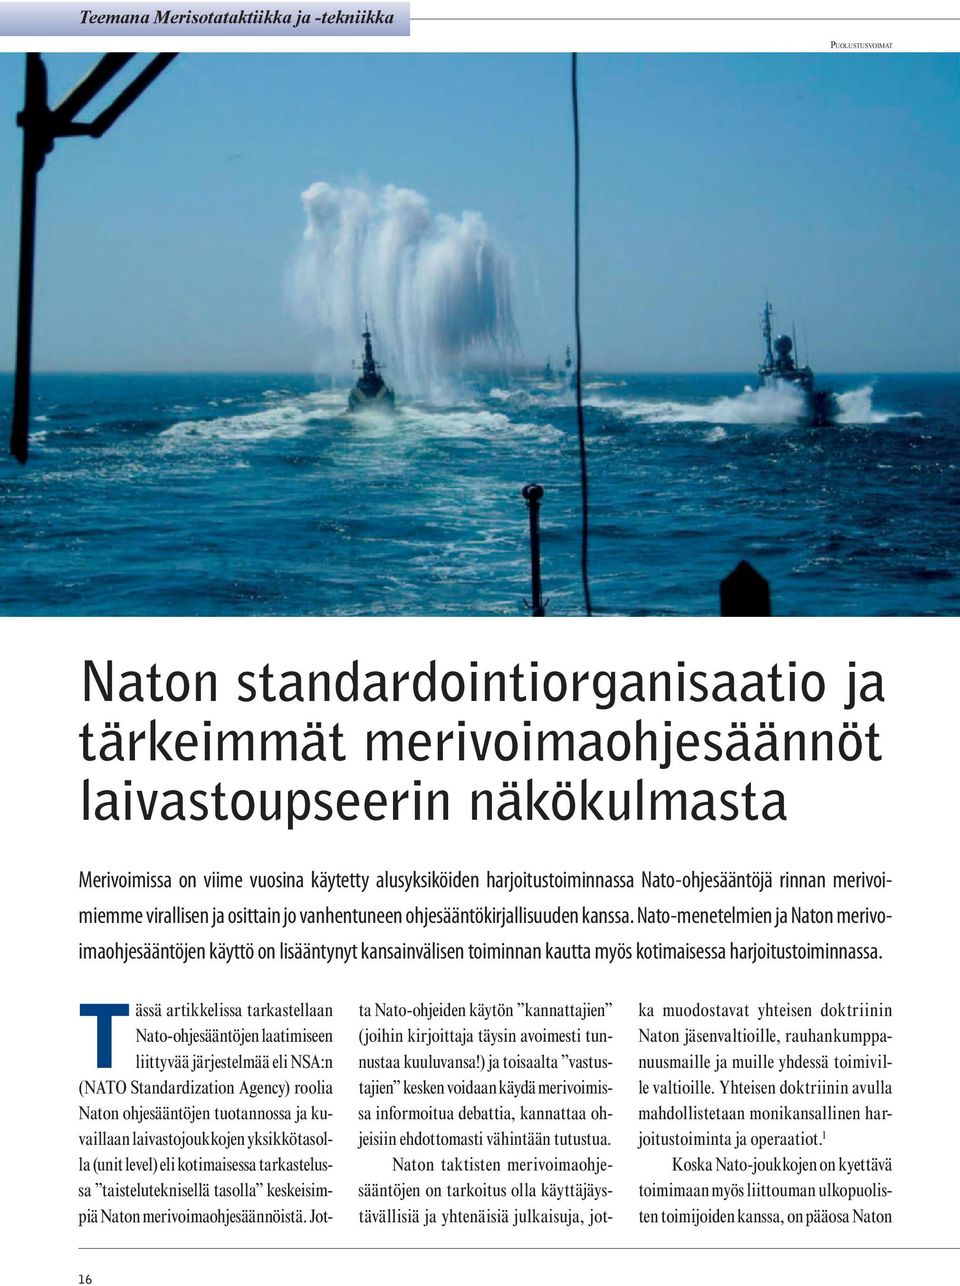 Nato-menetelmien ja Naton merivoimaohjesääntöjen käyttö on lisääntynyt kansainvälisen toiminnan kautta myös kotimaisessa harjoitustoiminnassa.